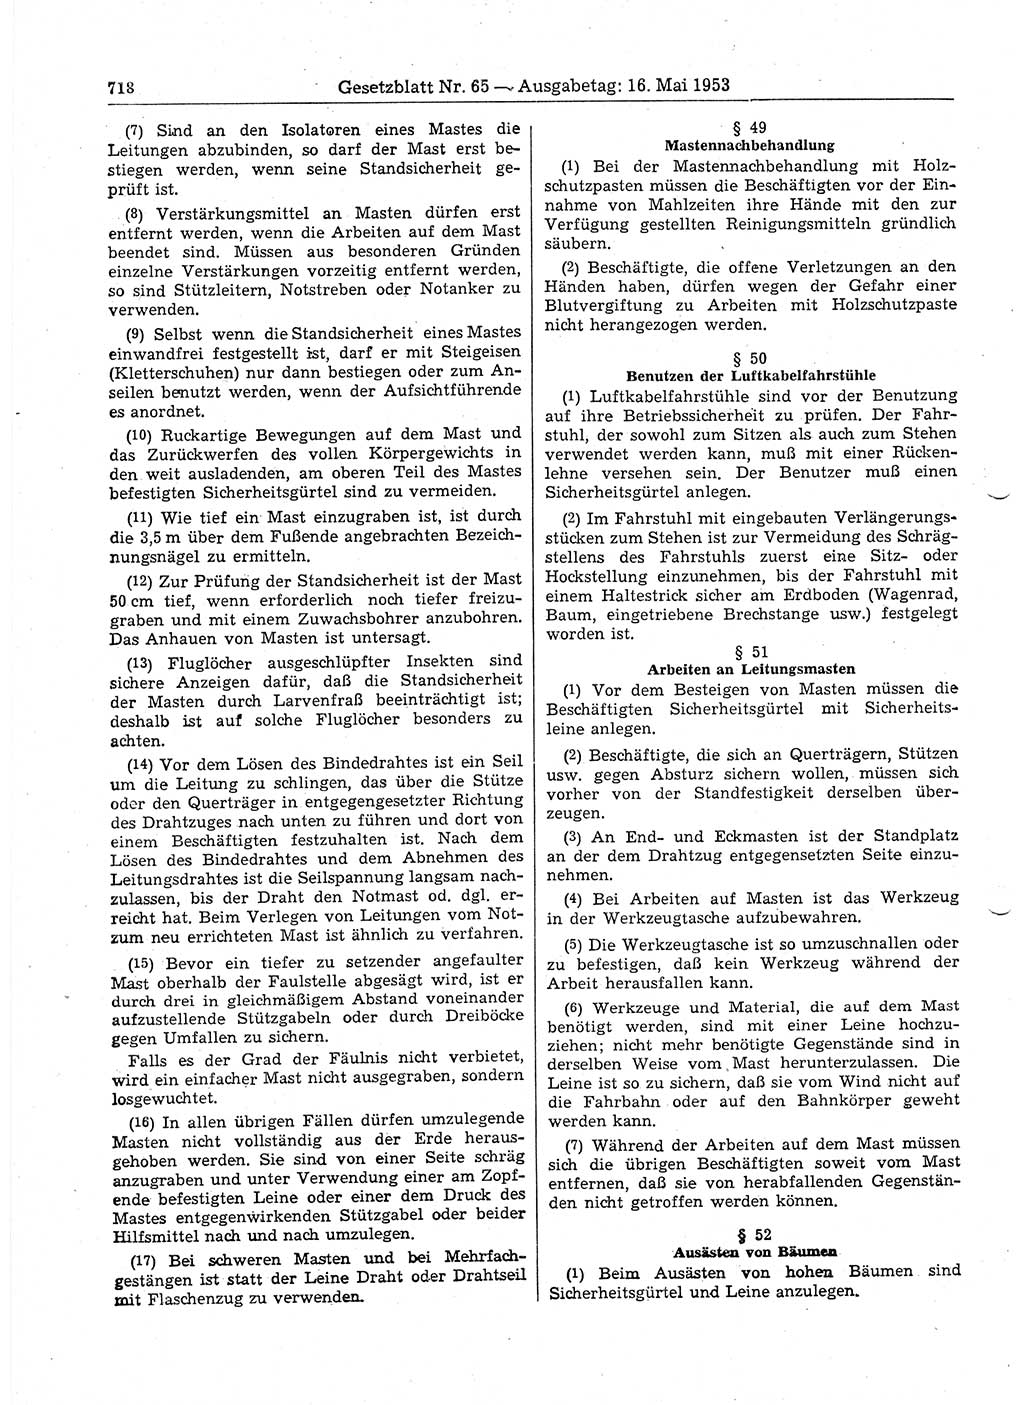 Gesetzblatt (GBl.) der Deutschen Demokratischen Republik (DDR) 1953, Seite 718 (GBl. DDR 1953, S. 718)